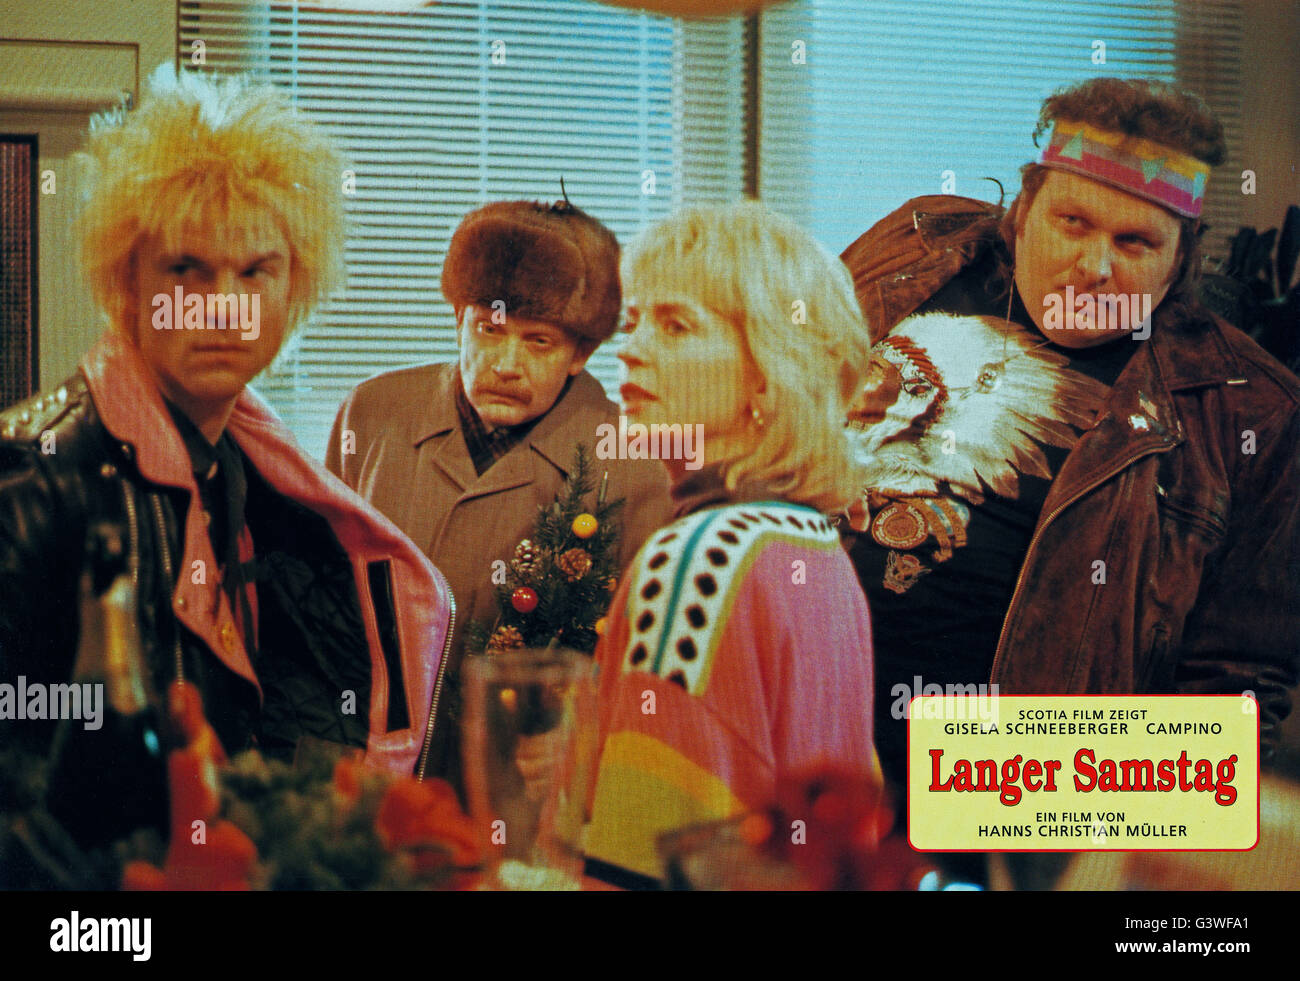 Langer Samstag, Deutschland 1992, Regie: Hanns Christian Müller, Darsteller: Campino, Gisela Schneeberger, Ottfried Fischer Stock Photo